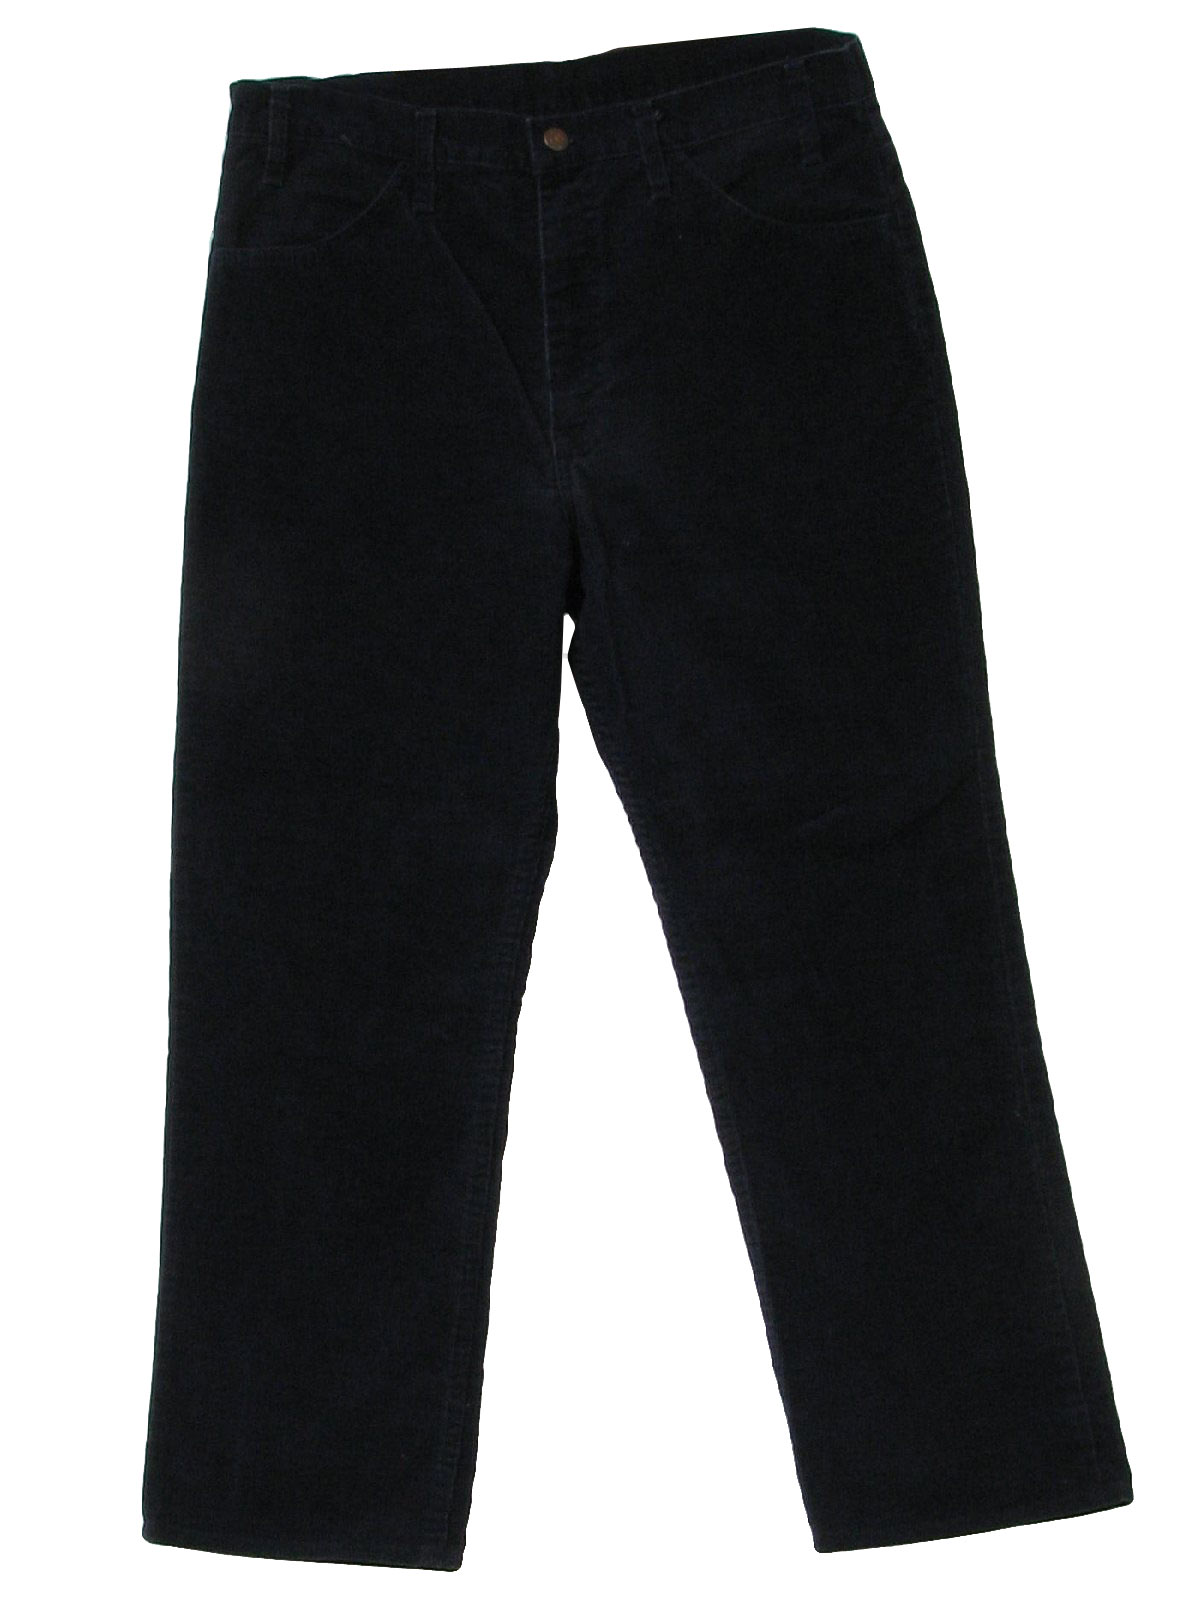 Lee Nineties Vintage Pants: 90s -Lee- Womens black cotton polyester ...